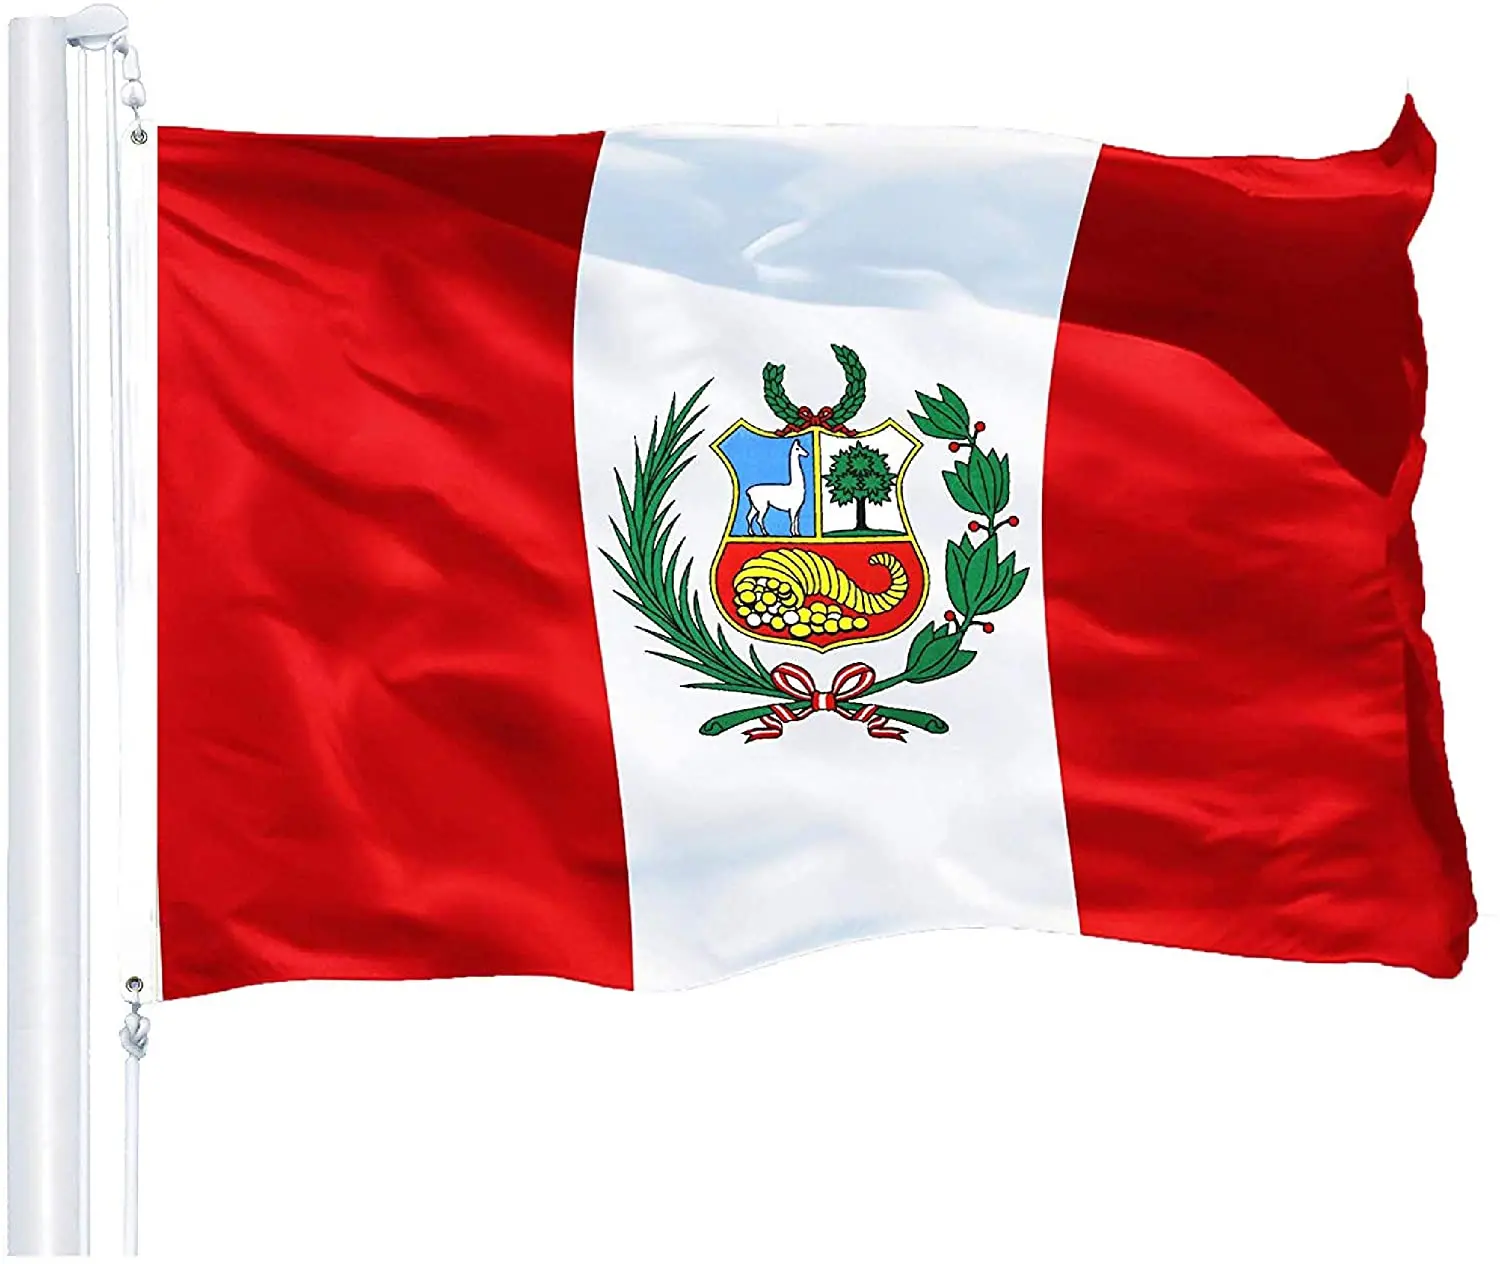 Cờ Peru là biểu tượng quốc gia đầy màu sắc và ý nghĩa. Bức hình này đưa chúng ta đến với đất nước Peru và giúp chúng ta tìm hiểu thêm về văn hóa và lịch sử của đất nước này. Hãy cùng trải nghiệm vẻ đẹp của Cờ Peru và khám phá sự đa dạng và phong phú của thế giới quanh ta.